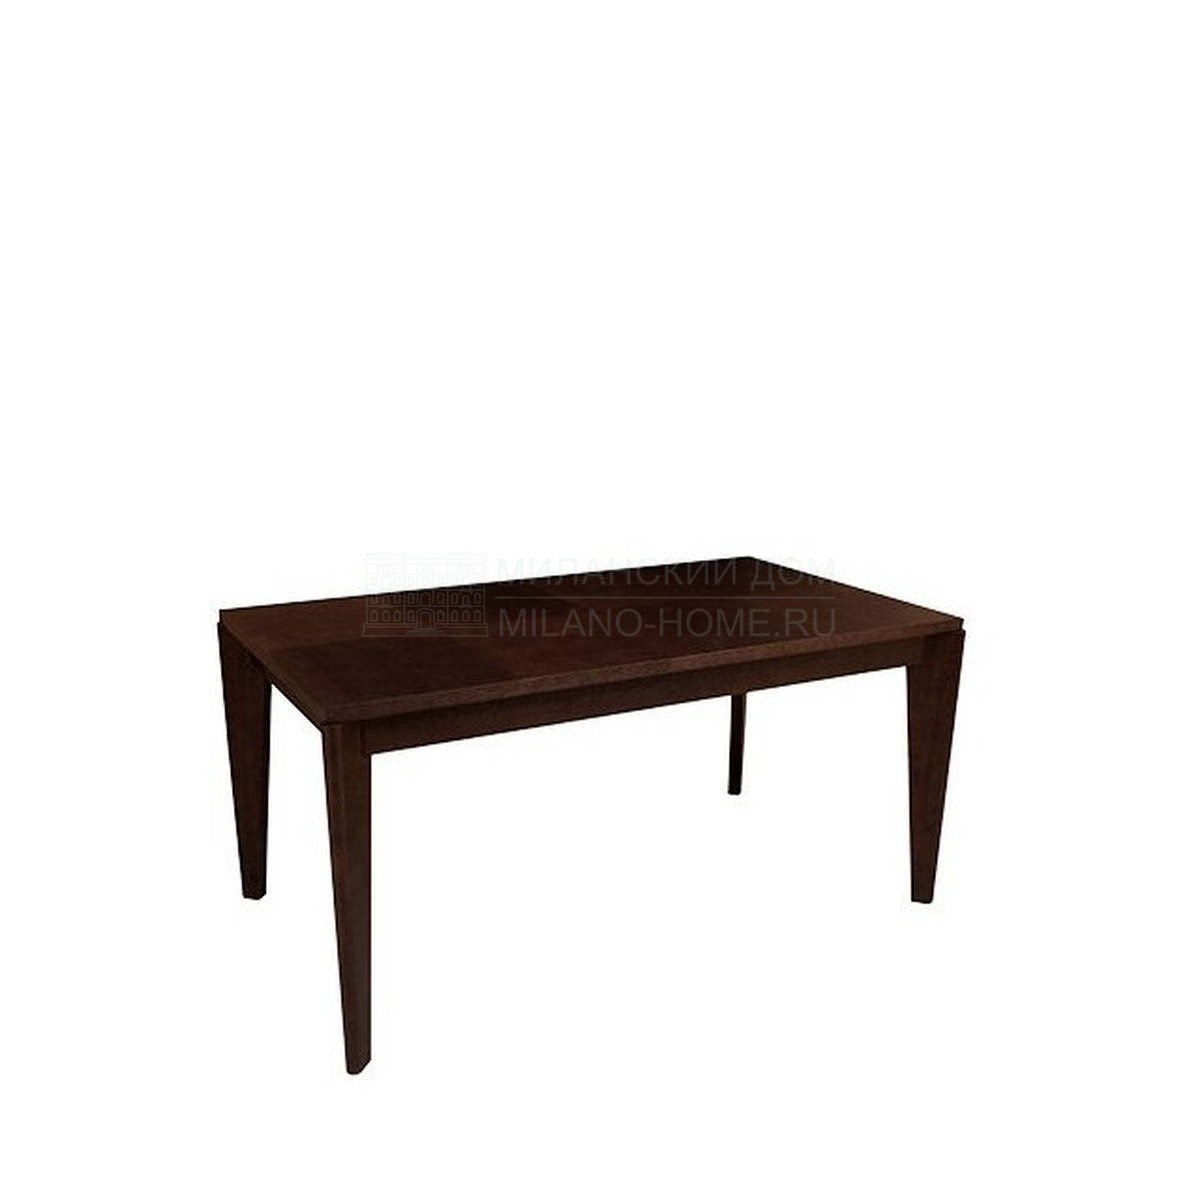 Кофейный столик Arhus rectangular из Франции фабрики HAMILTON CONTE